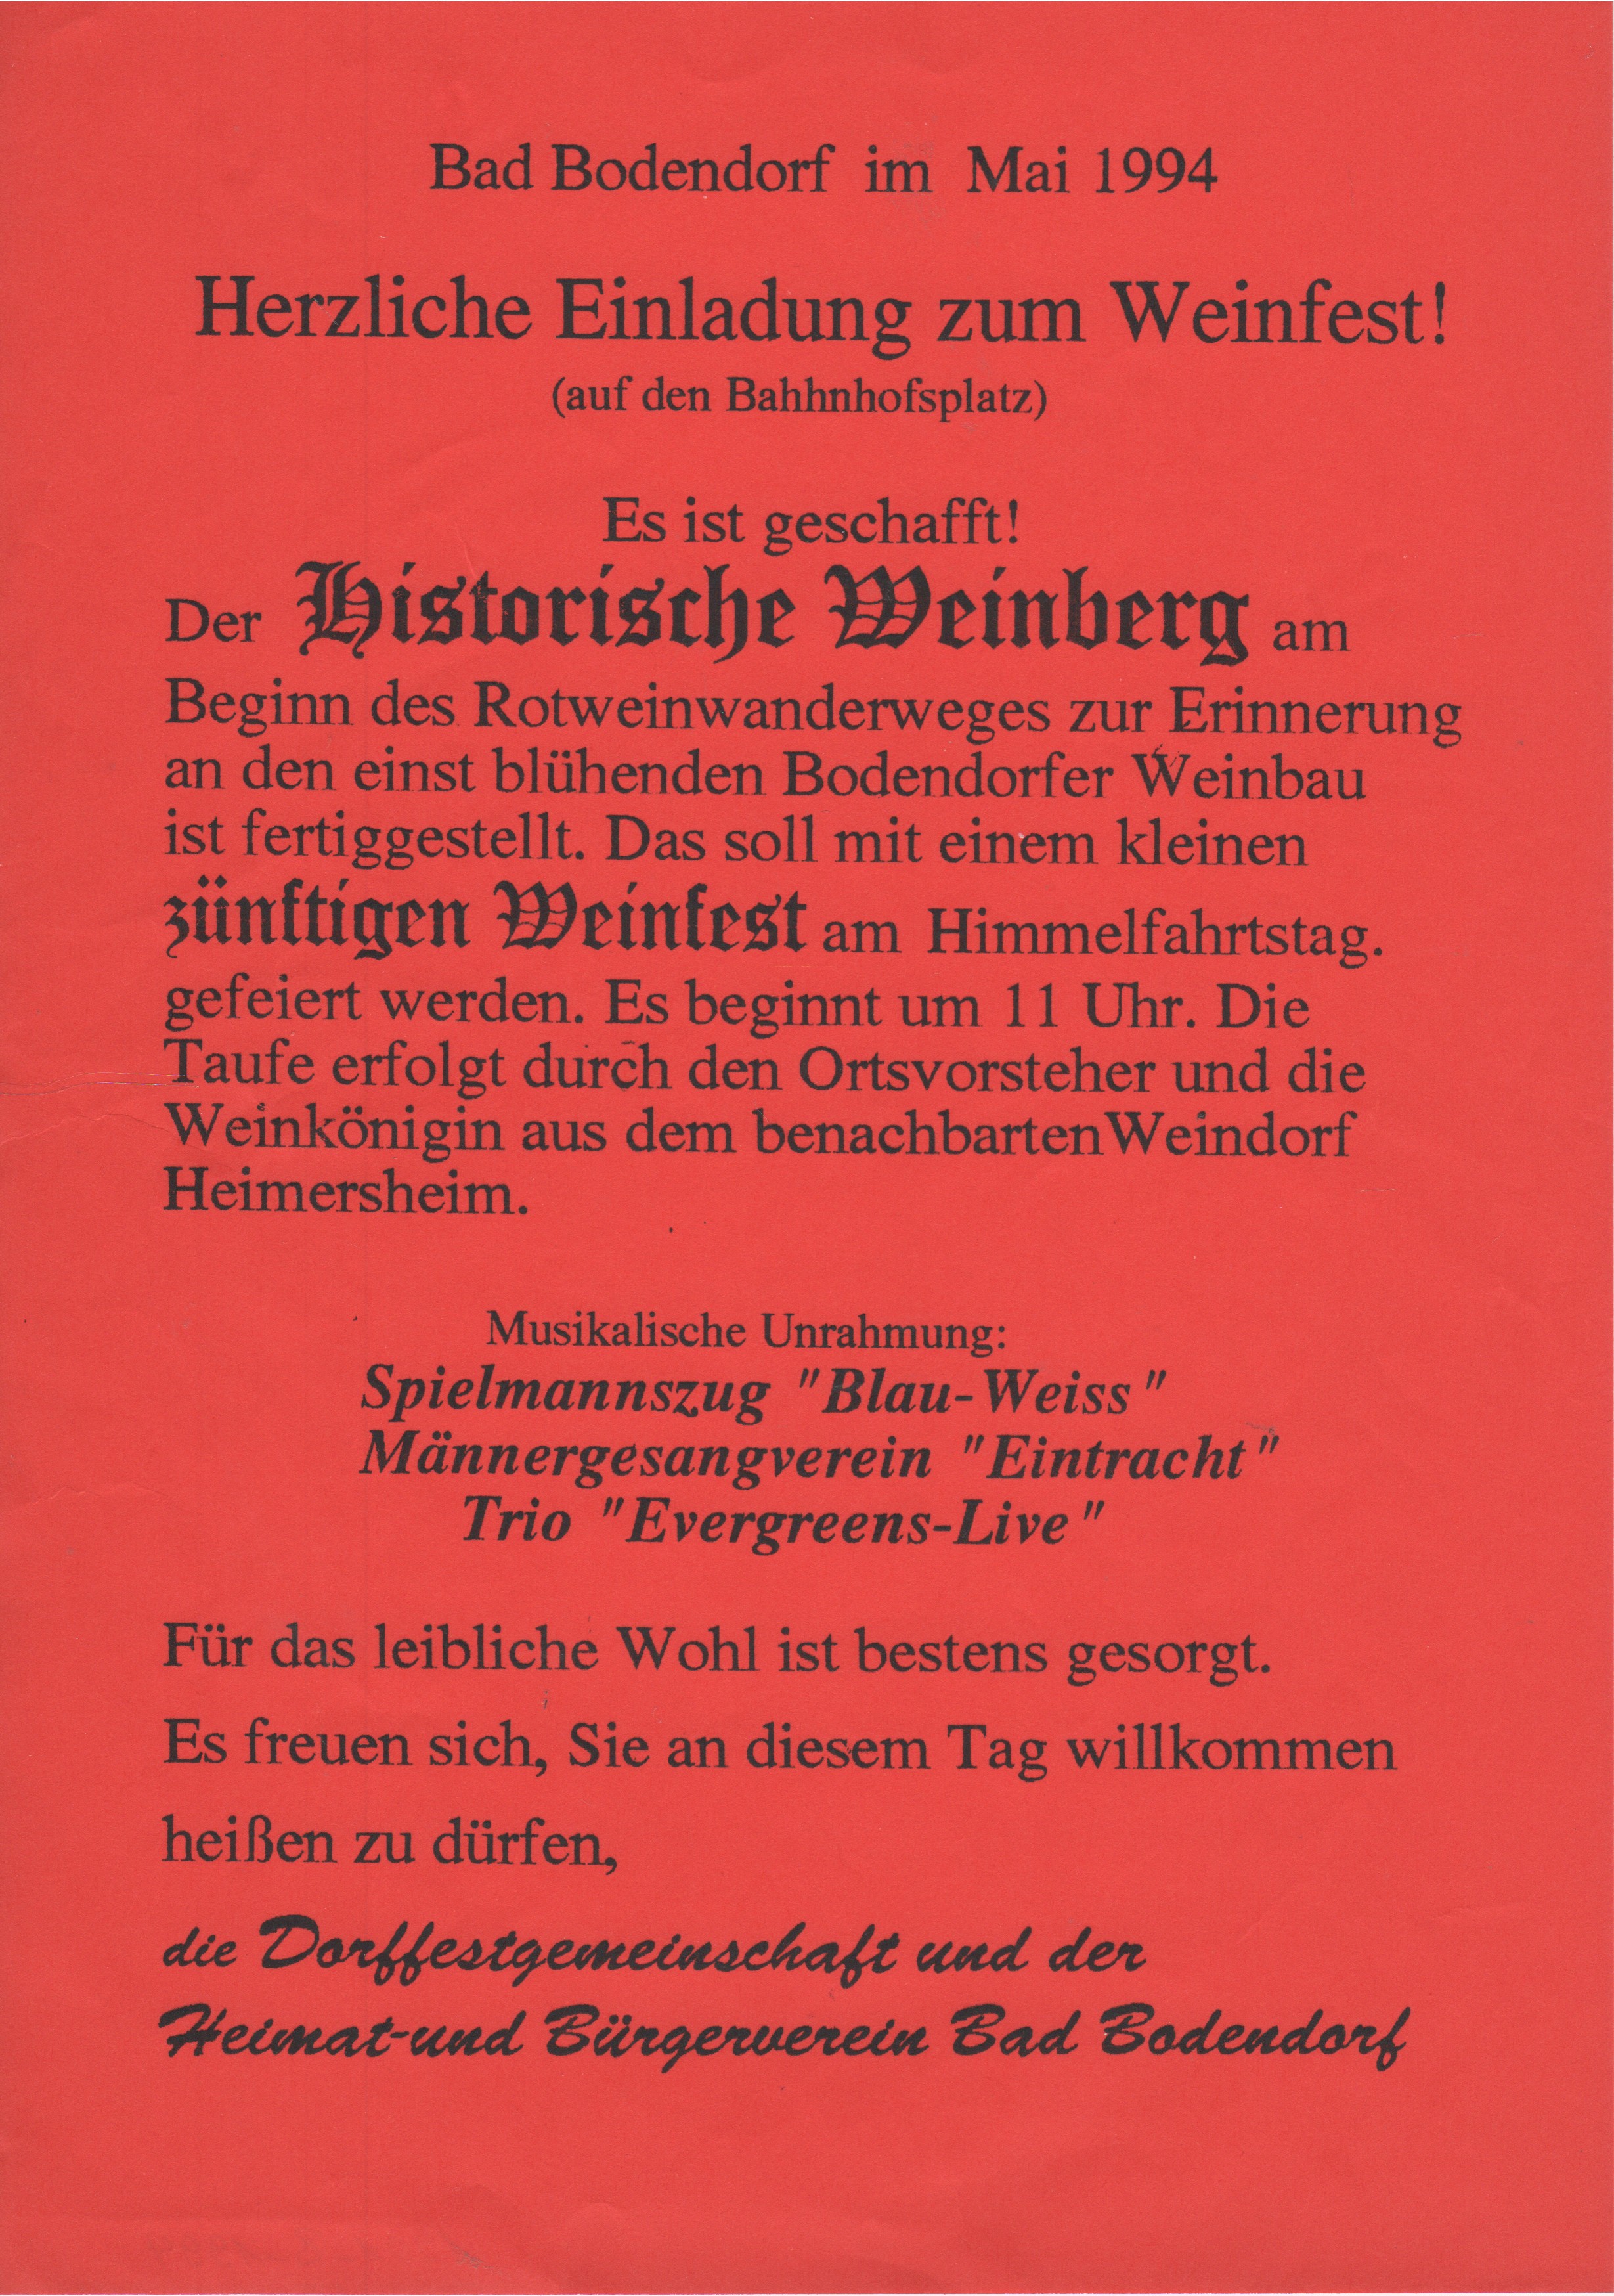 Plakat zum Weinfest und Eröffnung des historische Weinbergs in Bad Bodendorf (Heimatmuseum und -Archiv Bad Bodendorf CC BY-NC-SA)